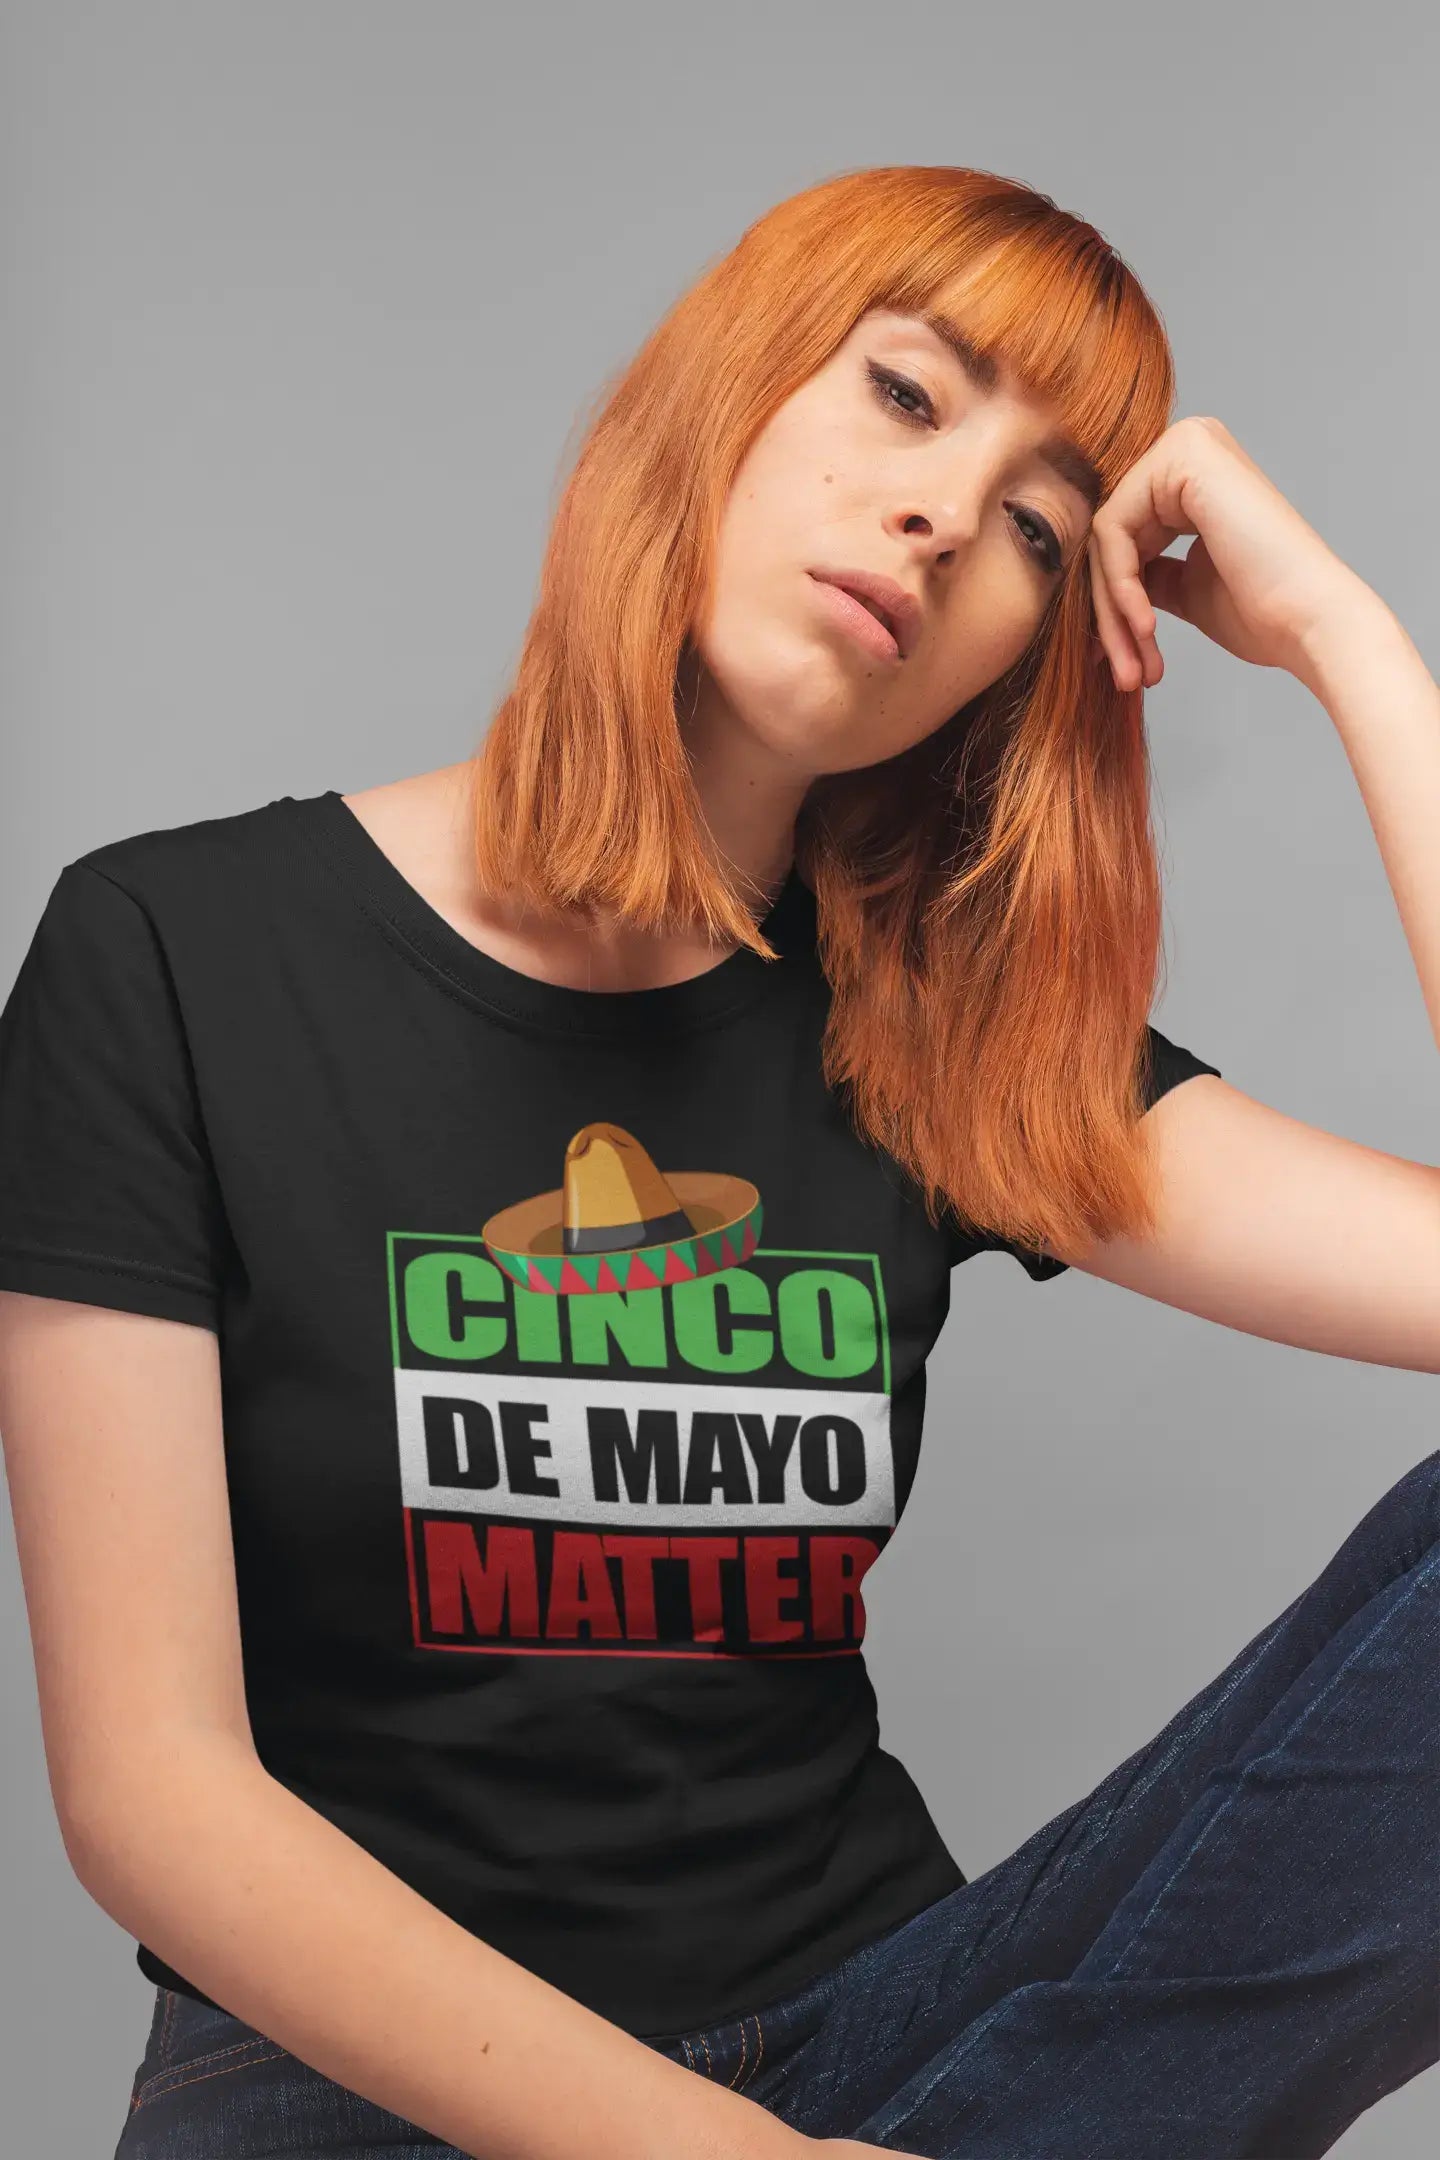 ULTRABASIC Women's Organic T-Shirt Cinco de Mayo Matter - Funny Mexican Tequila Tee Shirt